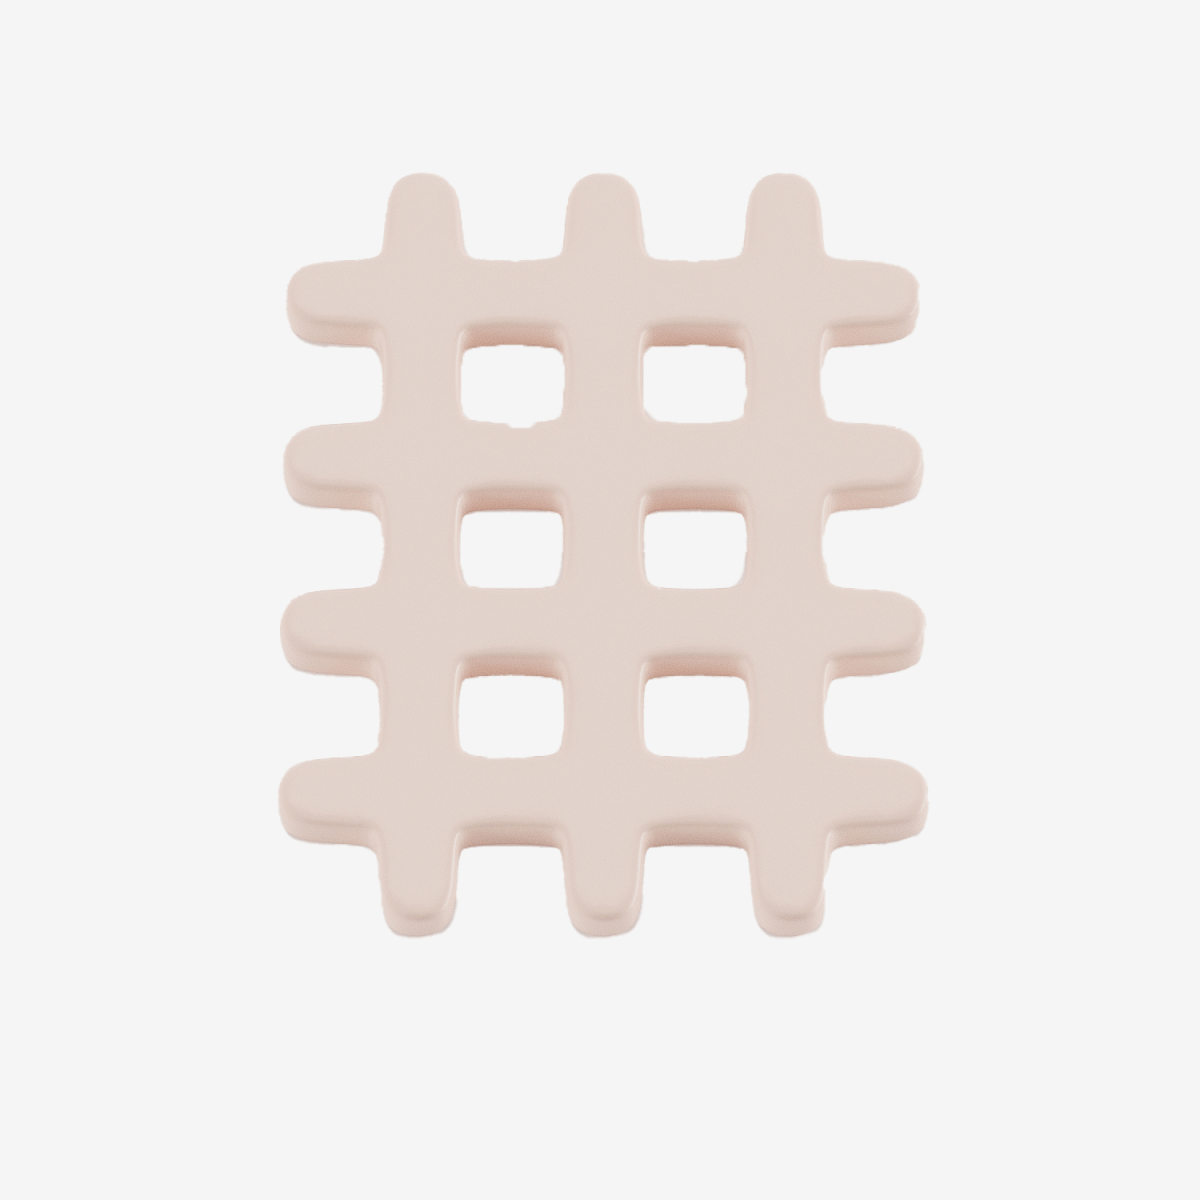 Collection arts de la table, objet art déco design : Dessous de plat céramique grid - Potiron Paris, site de déco pas cher